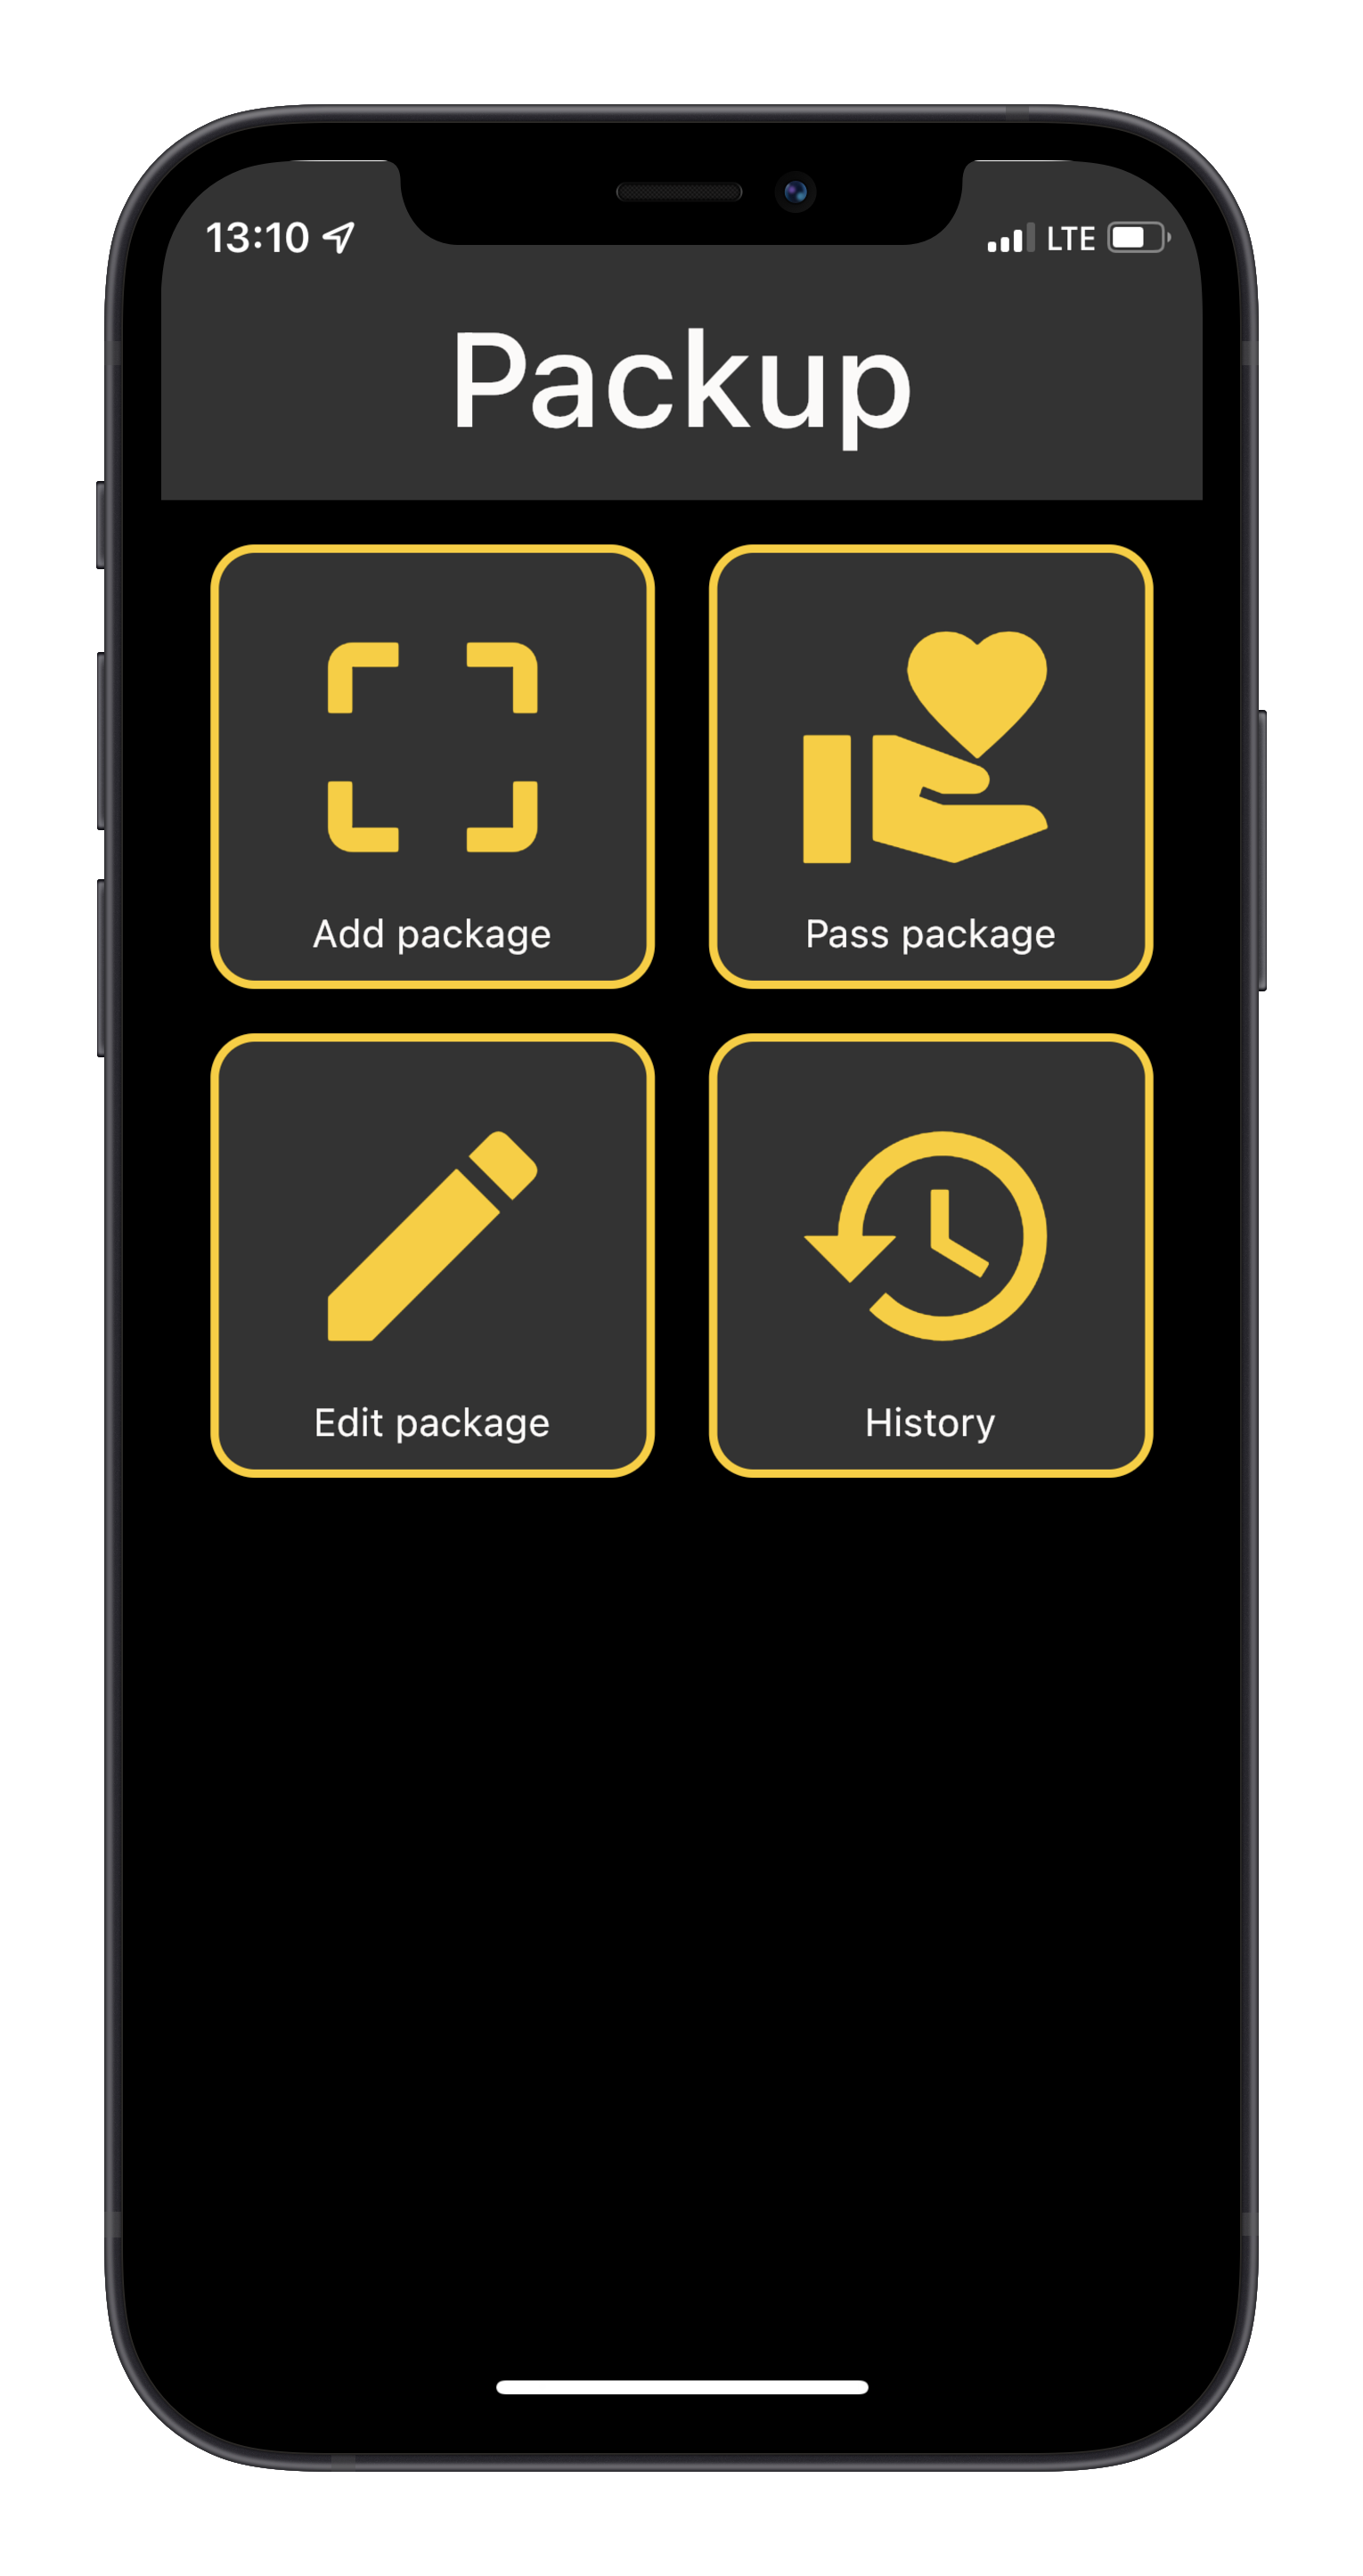 Flutter app for managing delivered packages in office